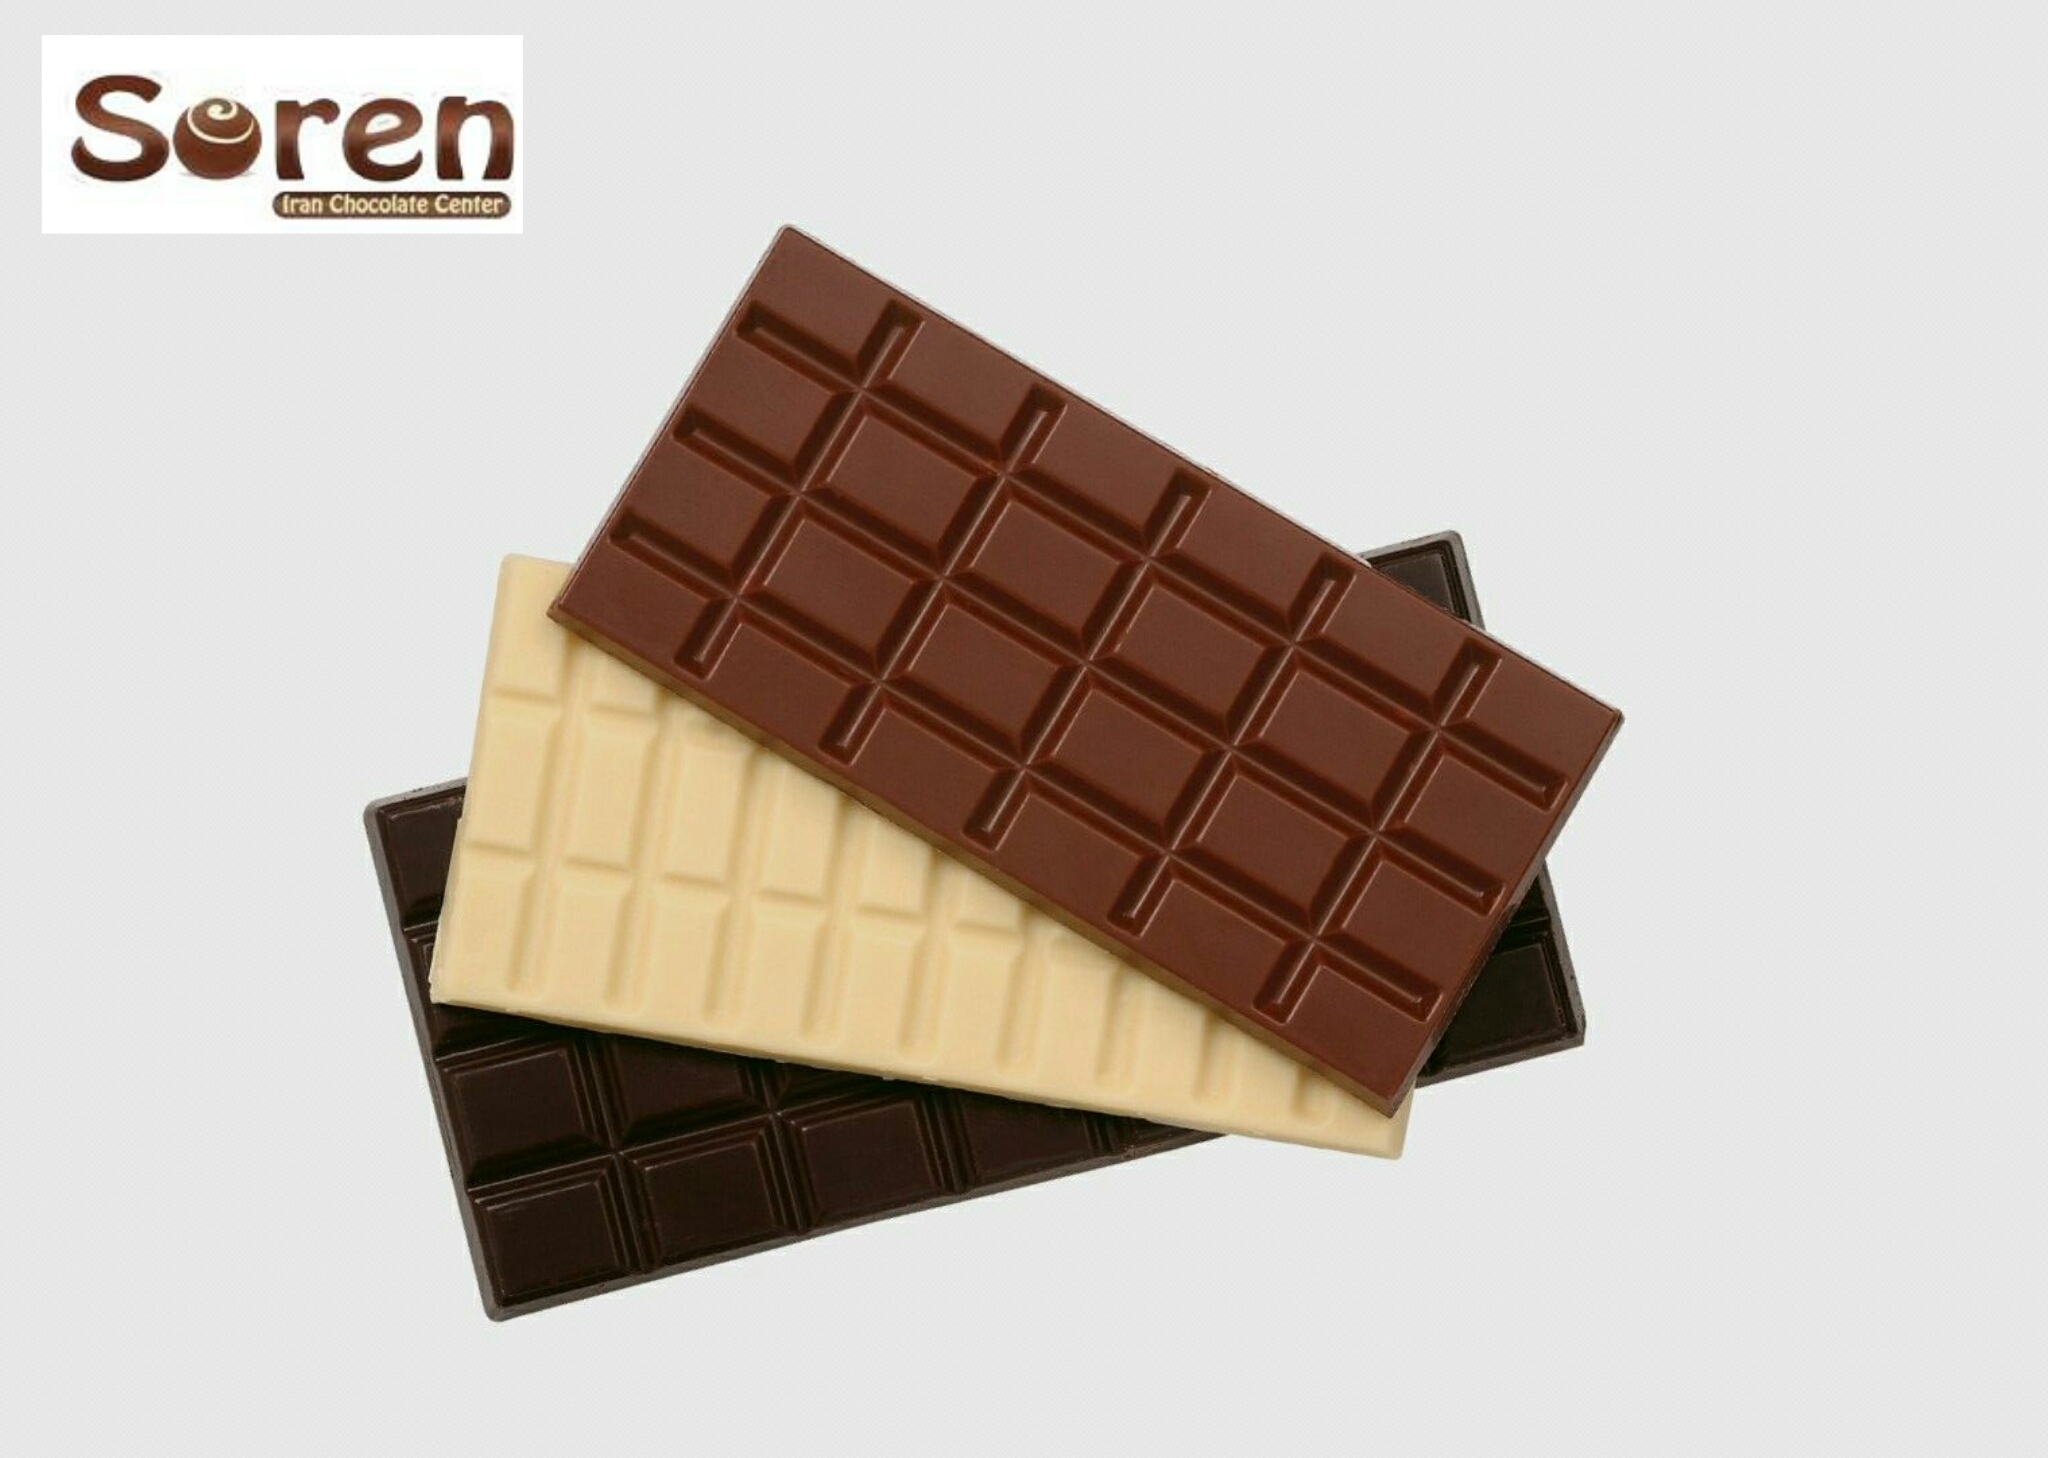 مقایسه انواع شکلات تخته ای پرکاربرد